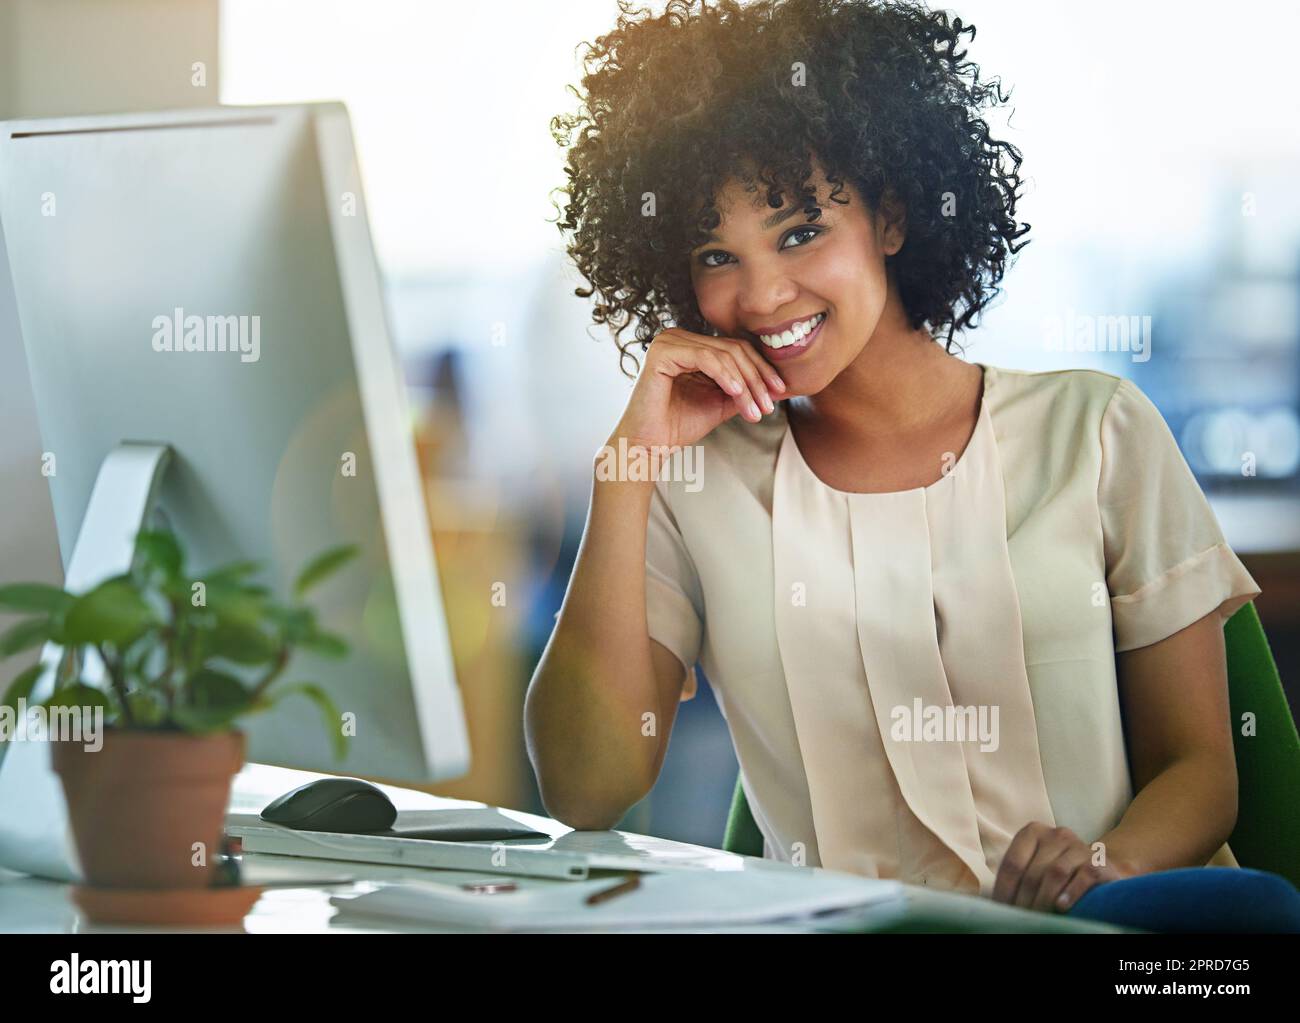 Femme d'affaires prospère, heureuse et confiante assise à l'ordinateur au bureau avec un état d'esprit positif. Belle femme entrepreneure en bonne santé ou leader innovant et digne de confiance souriant pendant le travail. Banque D'Images